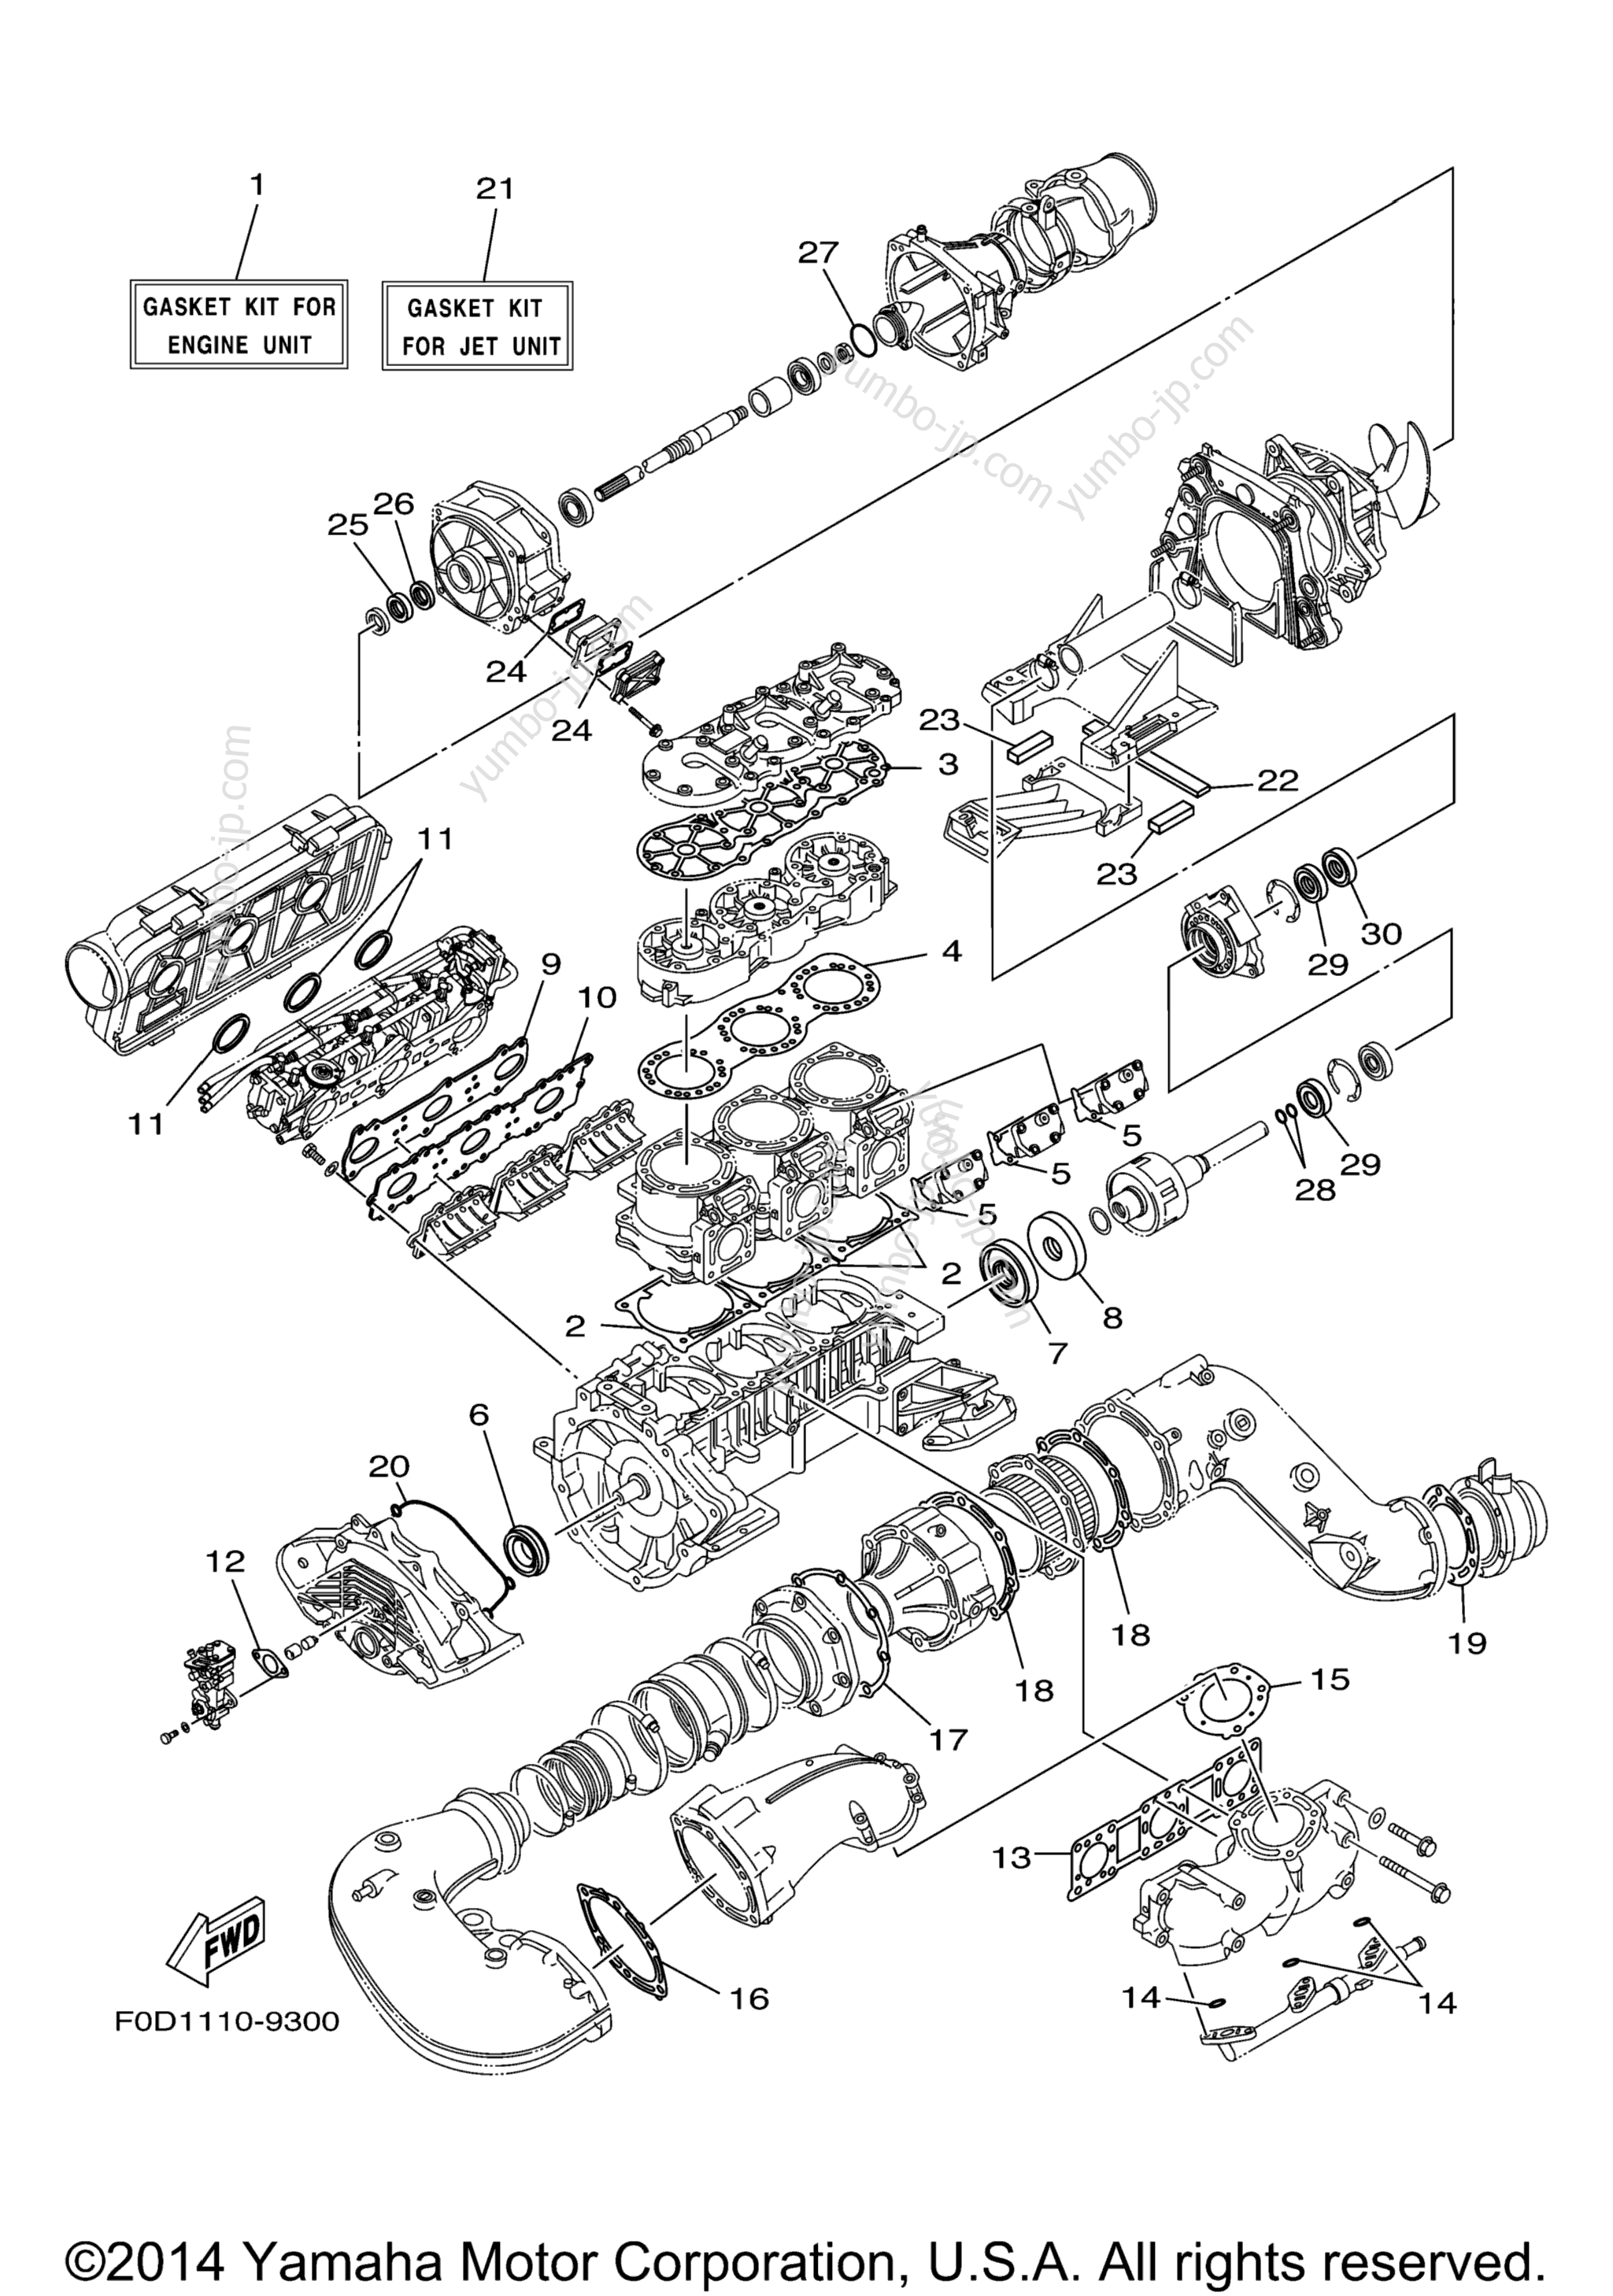 Repair Kit 1 для гидроциклов YAMAHA XL1200 LTD (XA1200Y) 2000 г.